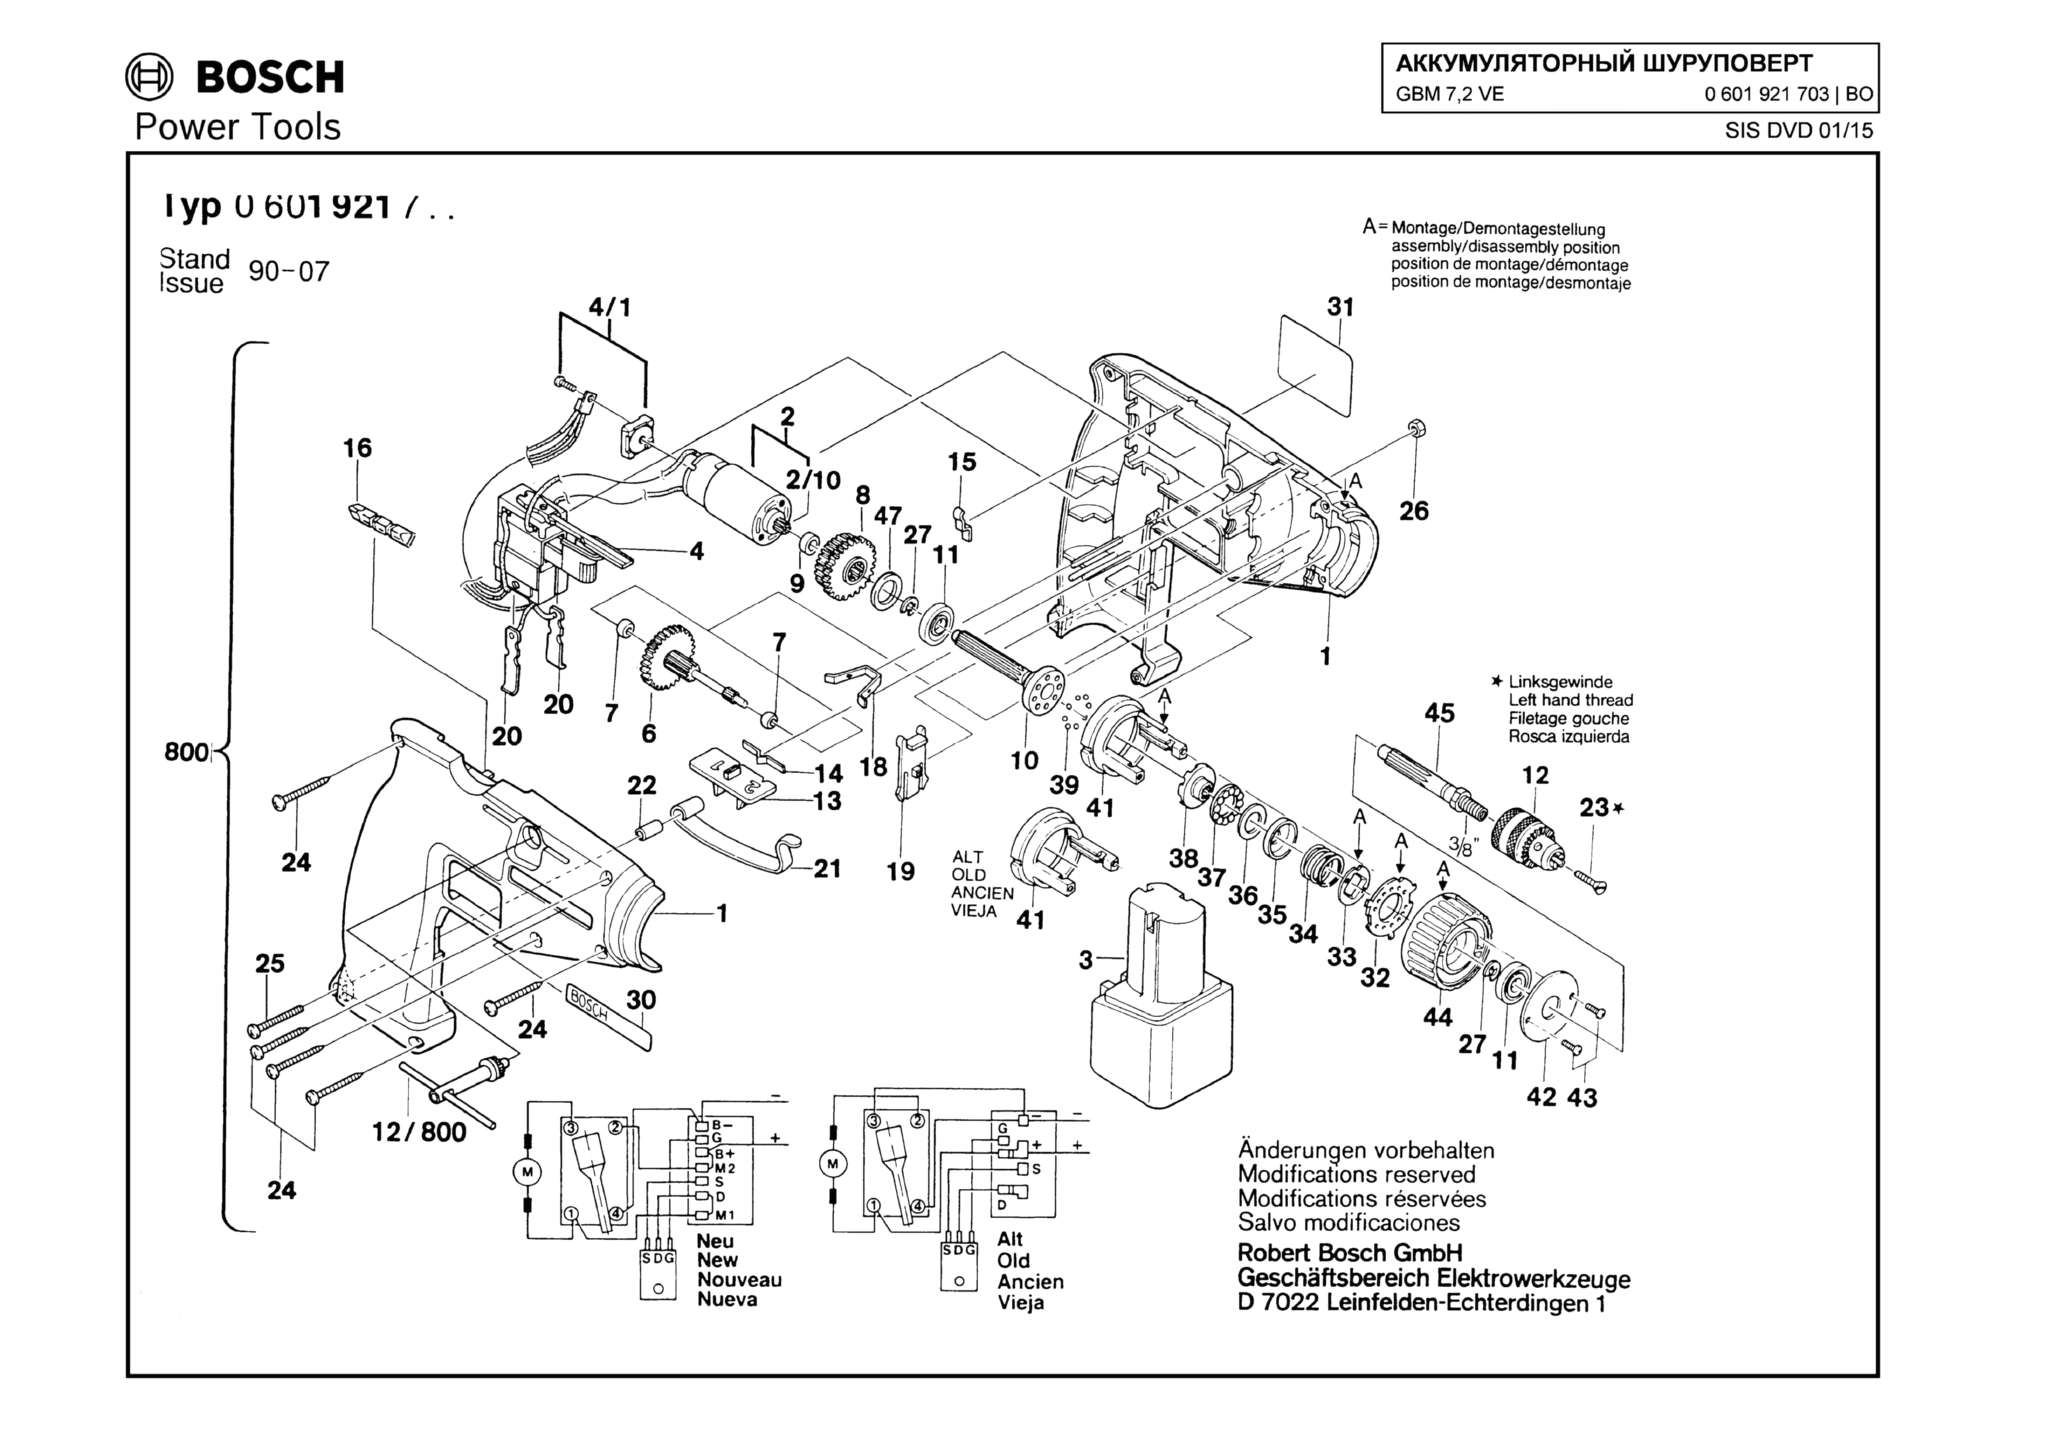 Запчасти, схема и деталировка Bosch GBM 7,2 VE (ТИП 0601921703)